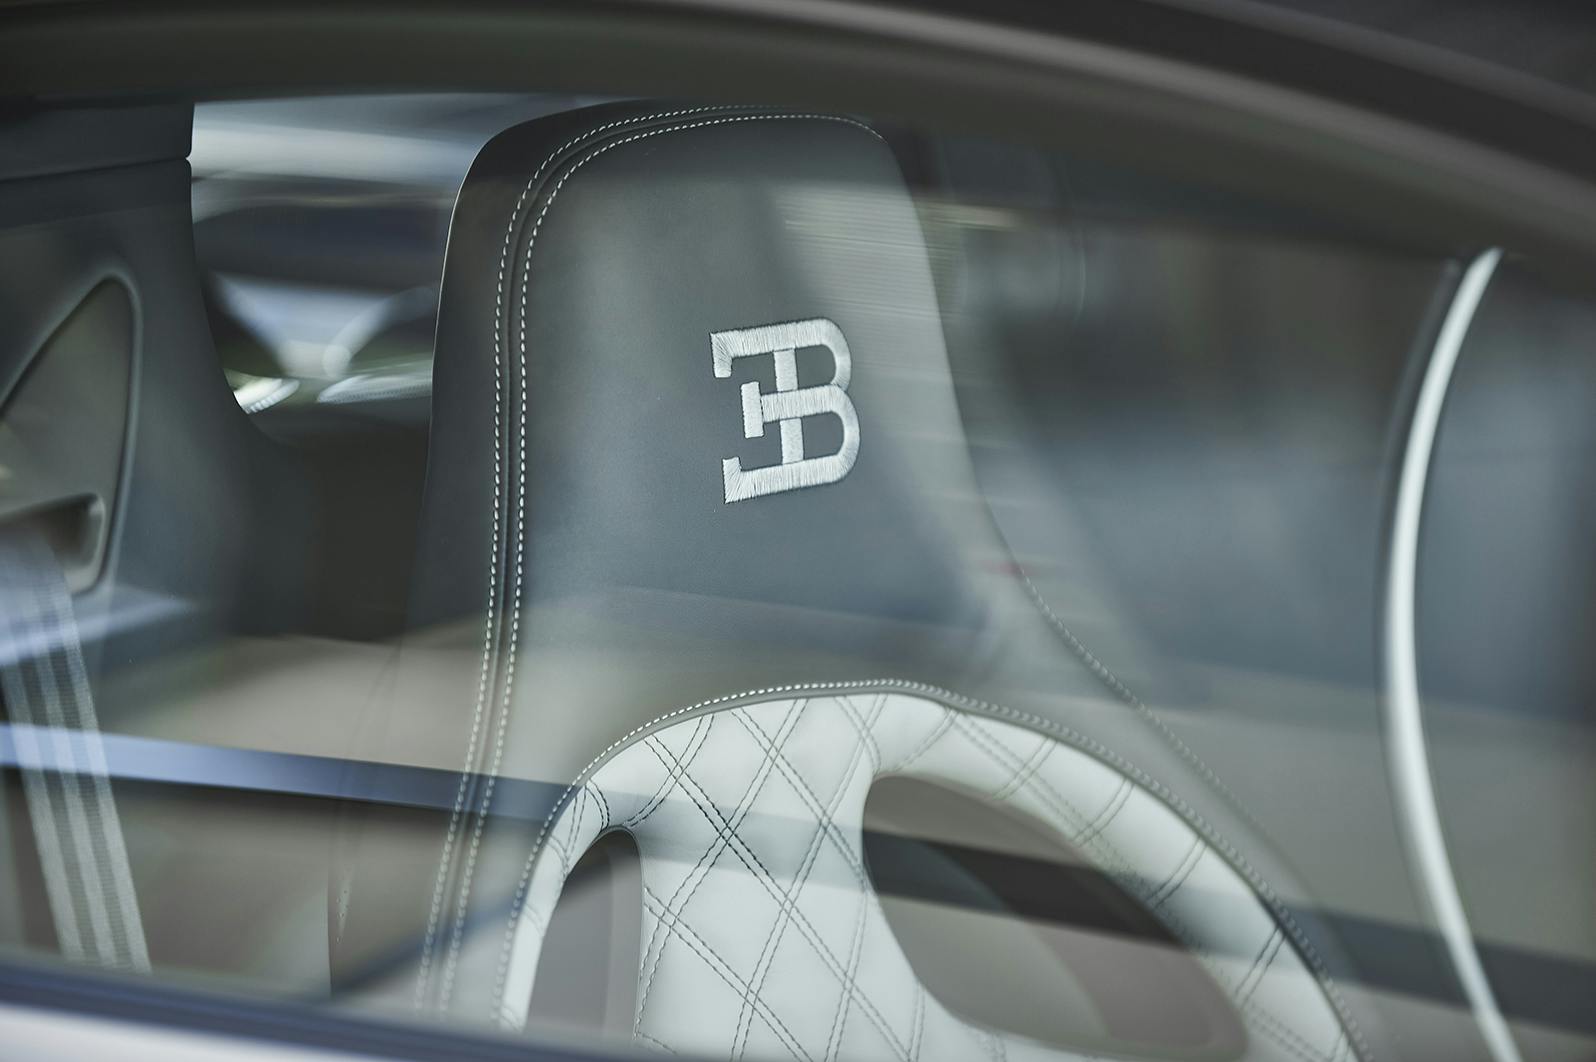 Bugatti Chiron Super Sport interior seat